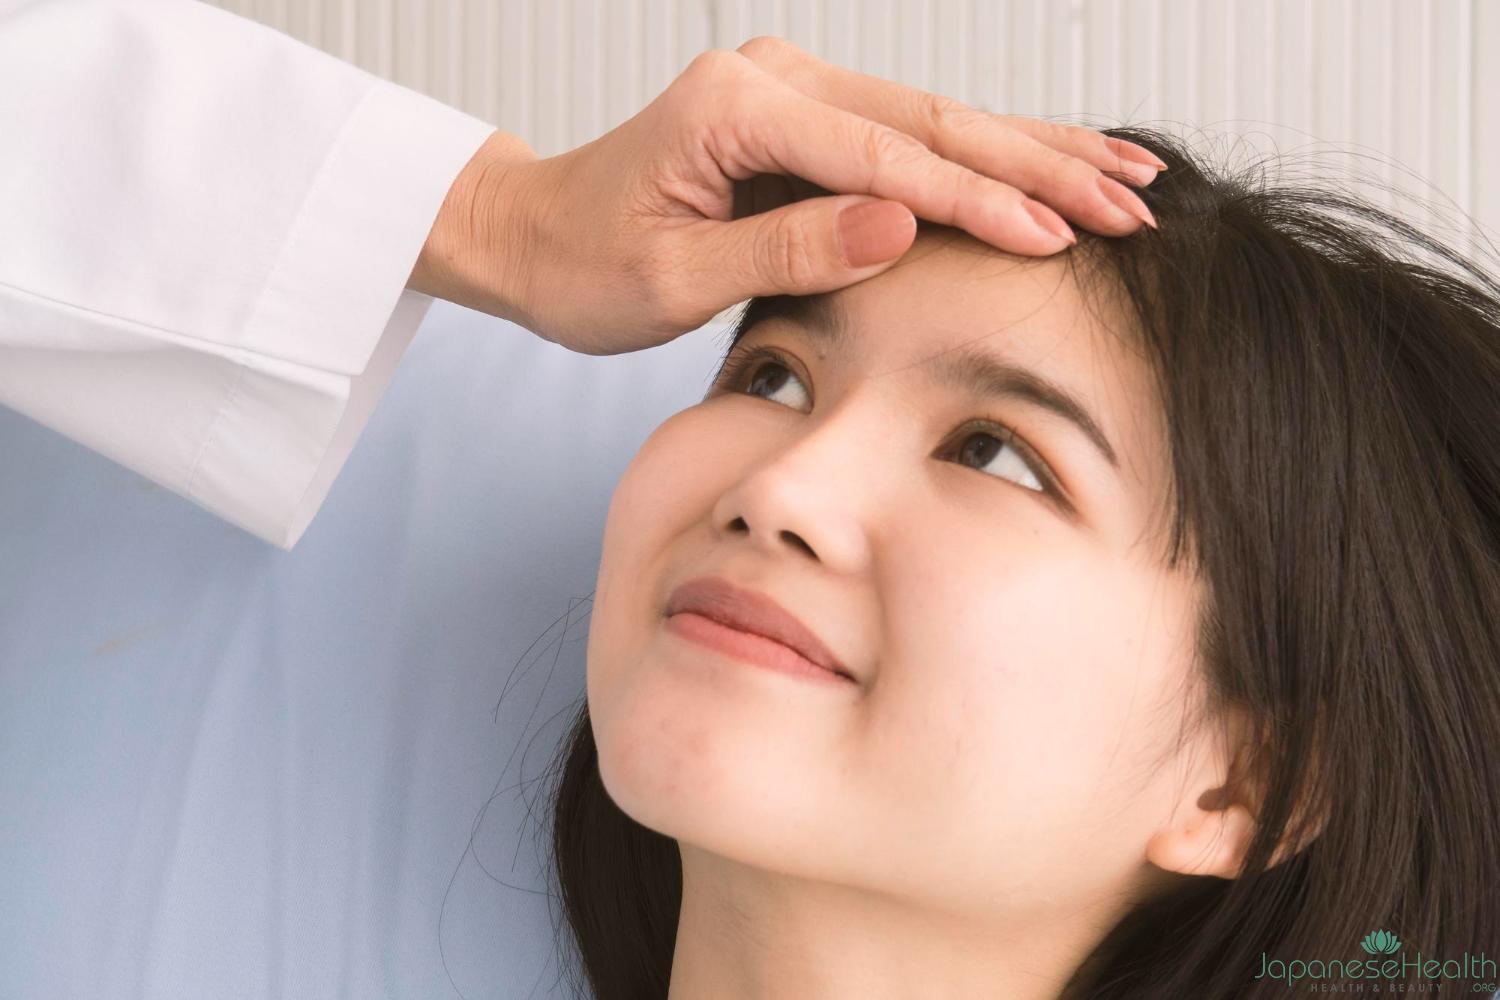 目の下のたるみを改善するための治療は高度な技術と専門知識を要するため、経験豊富な医師を選ぶことが重要です。